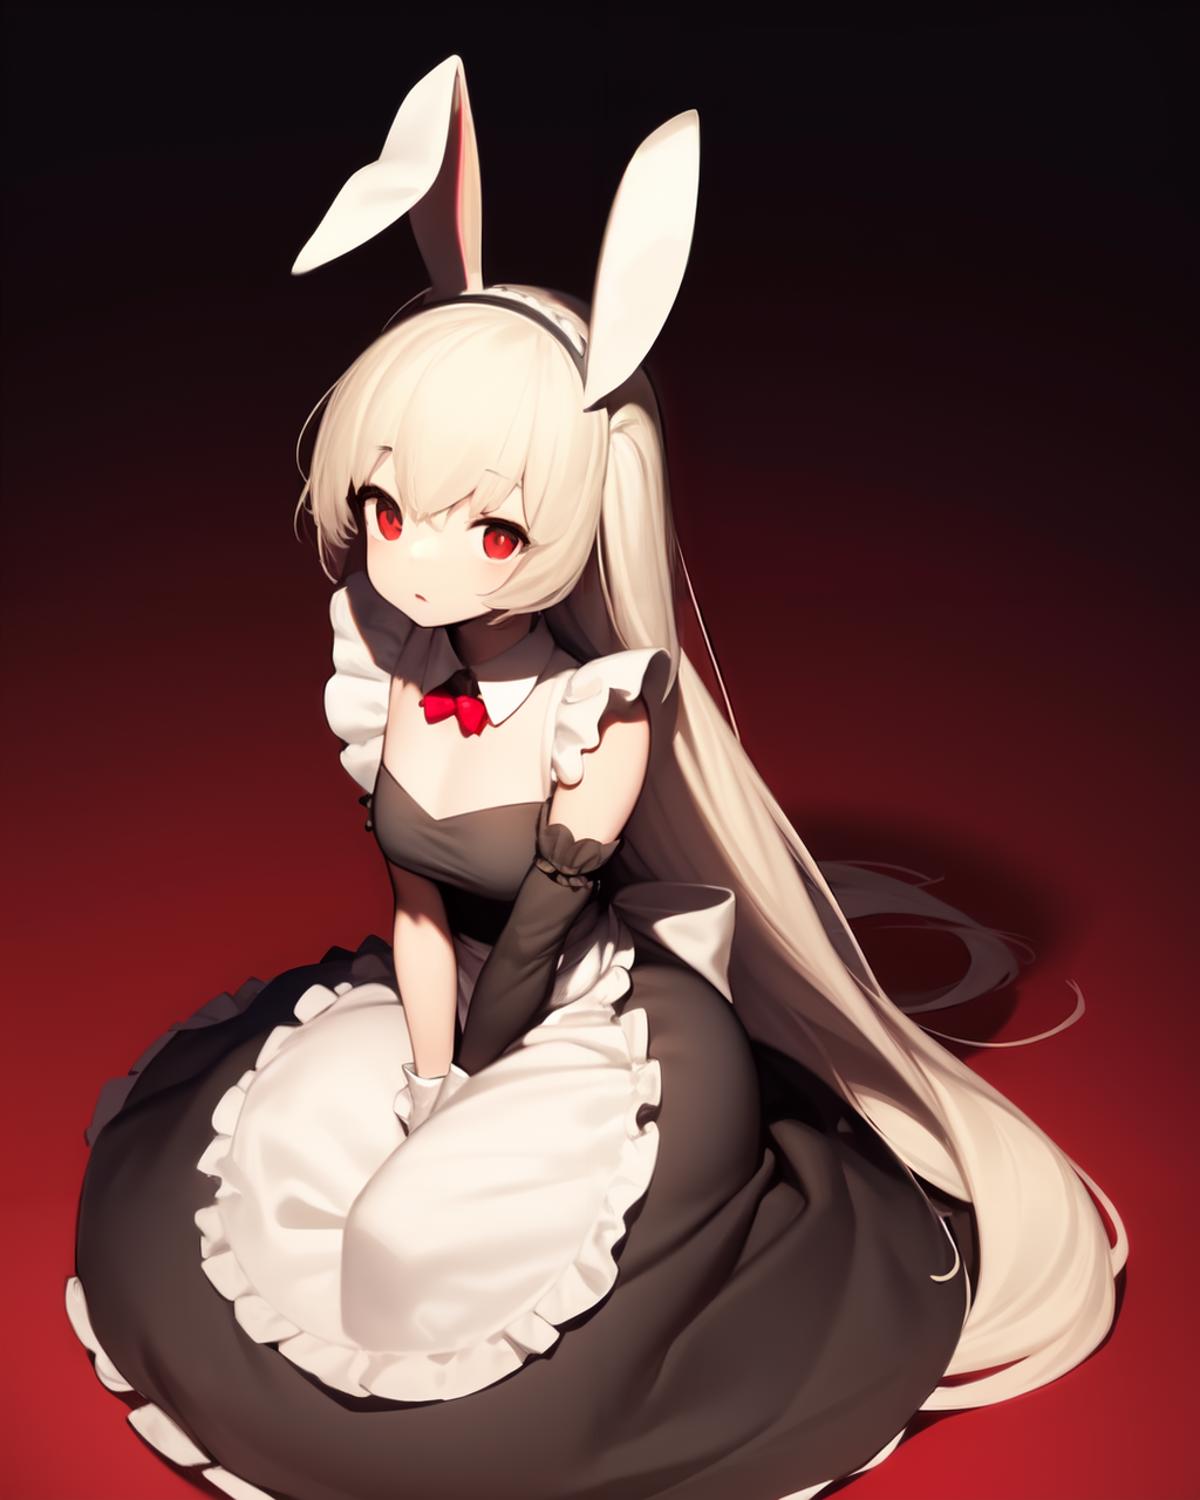 Shirokujira Style [Do You Like Fluffy Rabbits? Edition] image by AnyKey